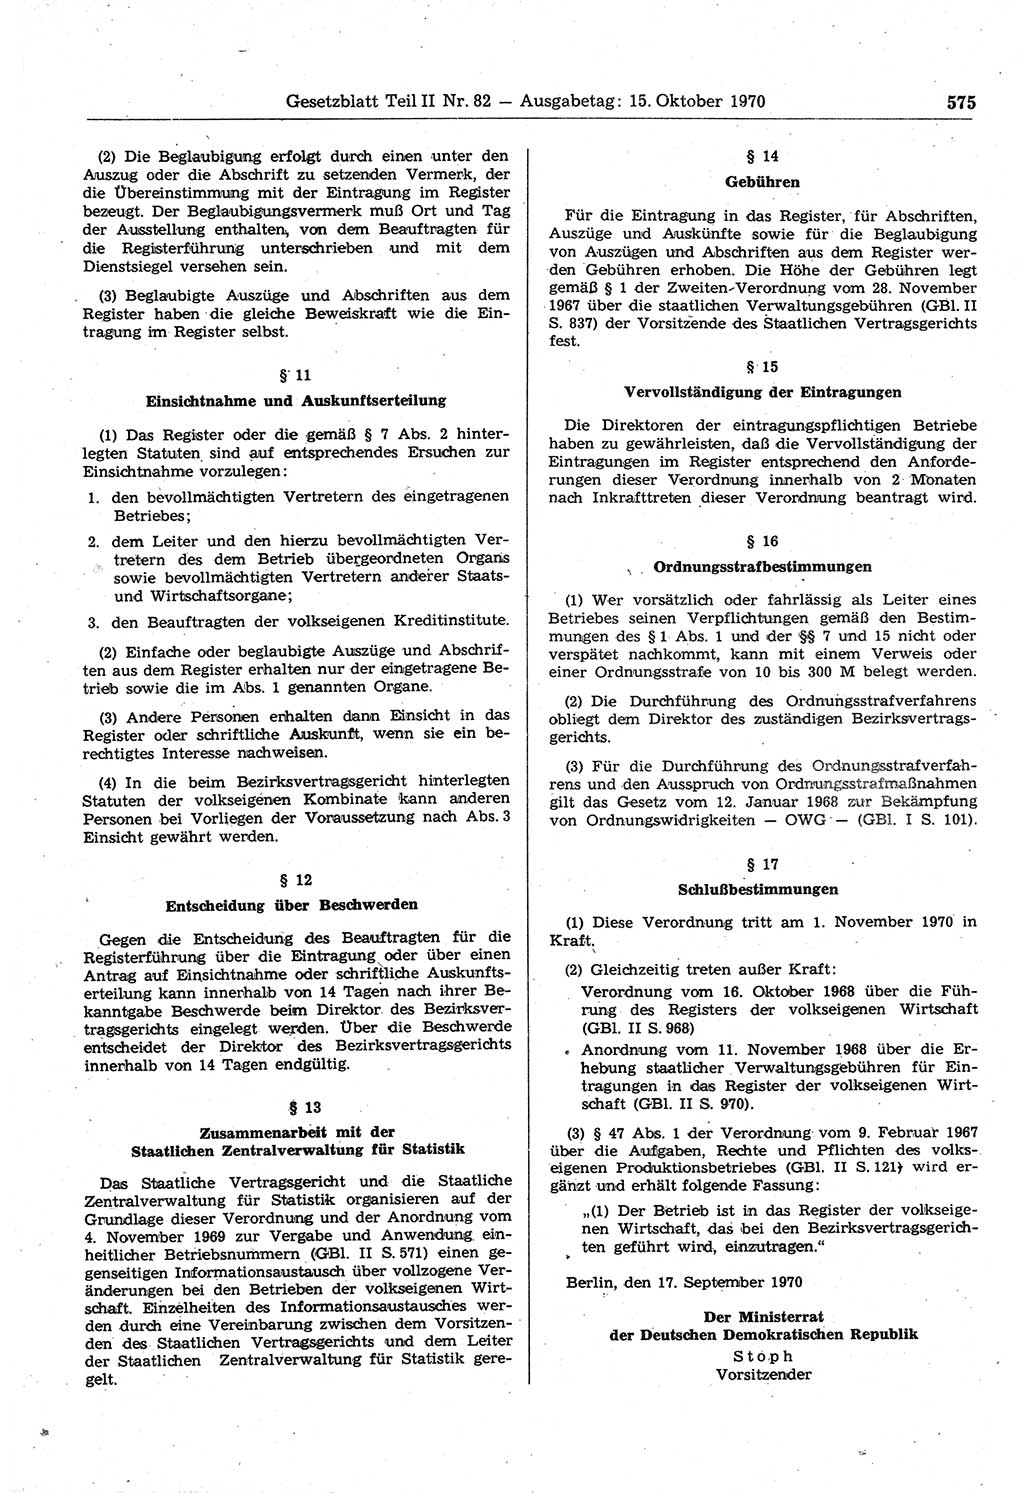 Gesetzblatt (GBl.) der Deutschen Demokratischen Republik (DDR) Teil ⅠⅠ 1970, Seite 575 (GBl. DDR ⅠⅠ 1970, S. 575)